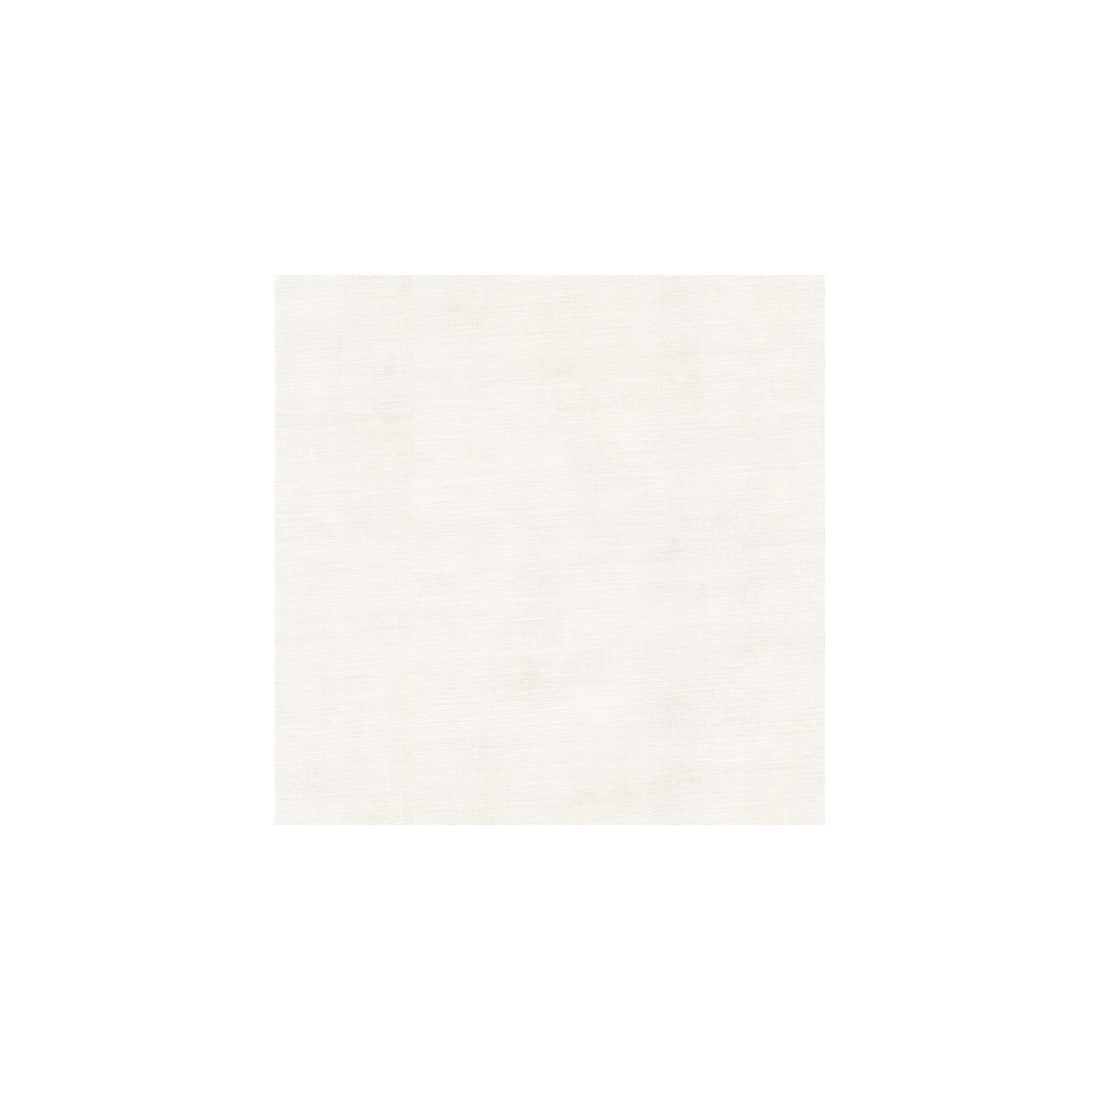 Kravet Basics fabric in 3778-101 color - pattern 3778.101.0 - by Kravet Basics